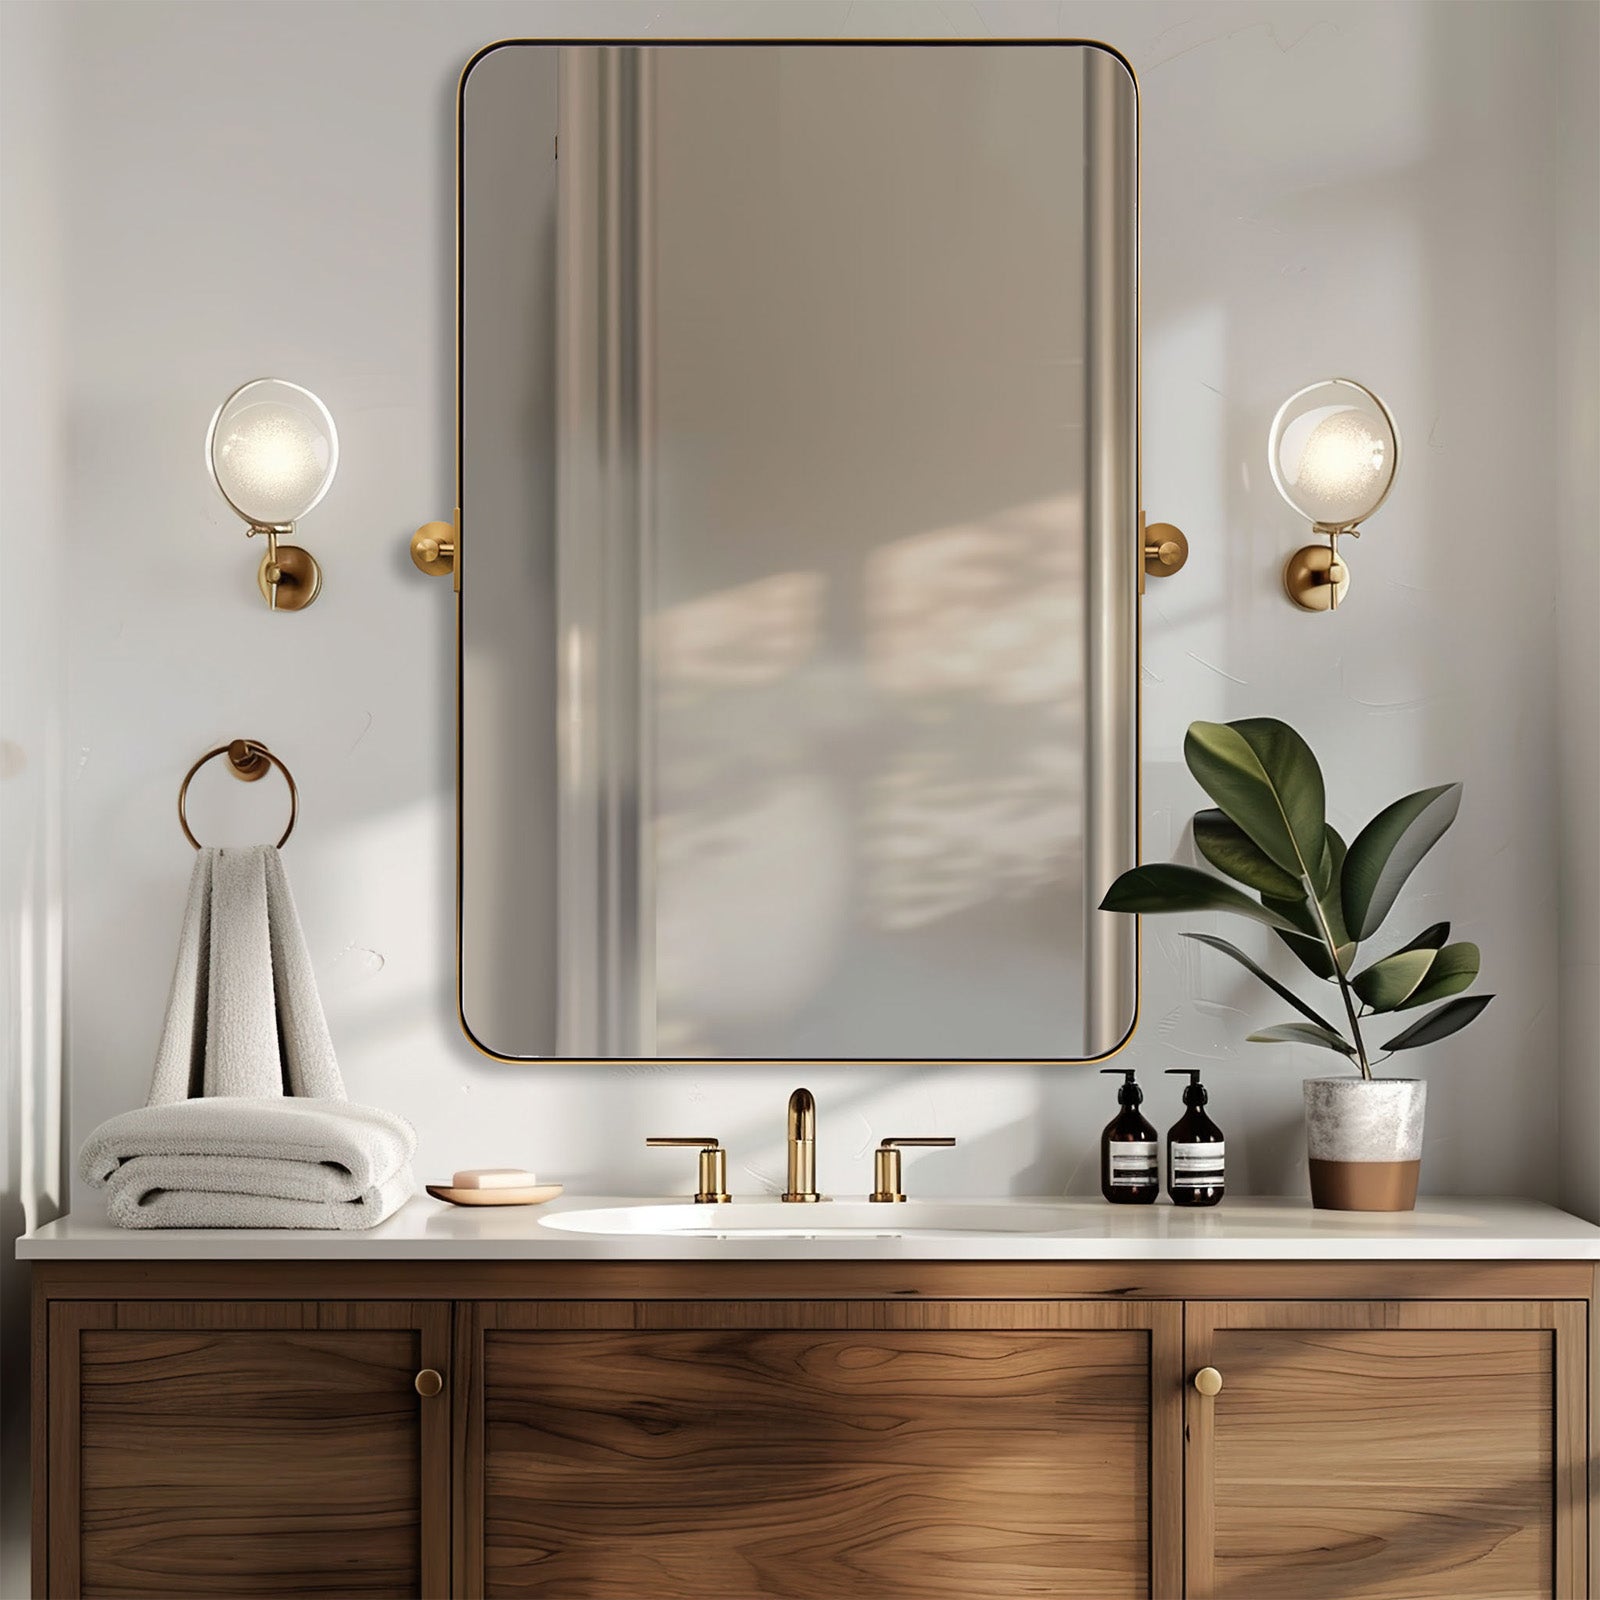 Tilting Rectangular Pivot  Mirror for Bathroom/Vanity | Stainless Steel Frame